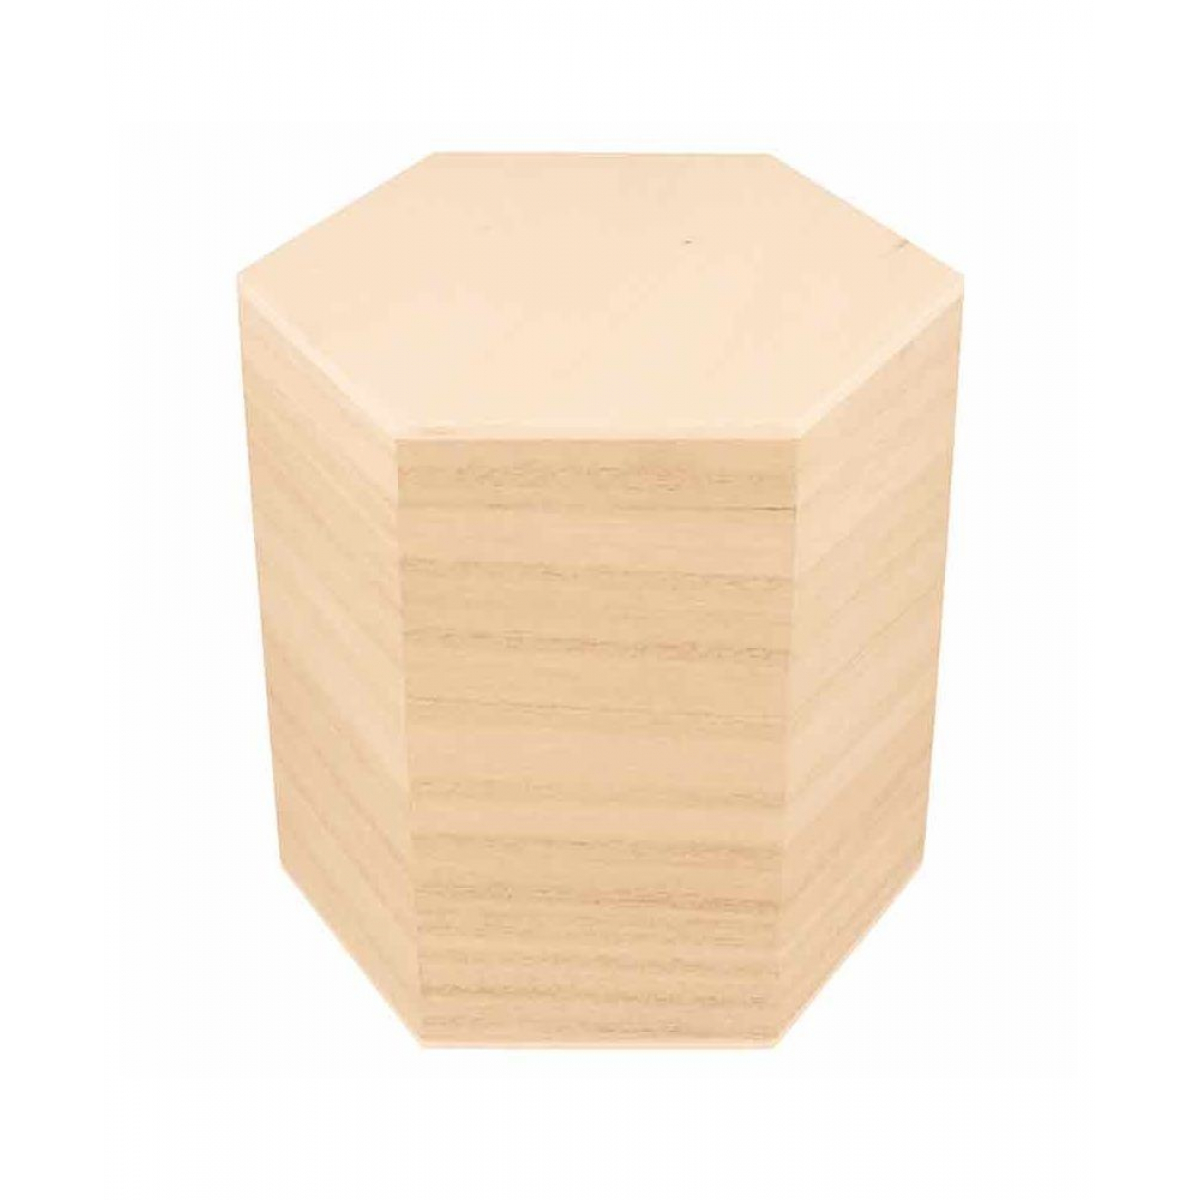 Boites Hexagonales en bois - 3 pièces